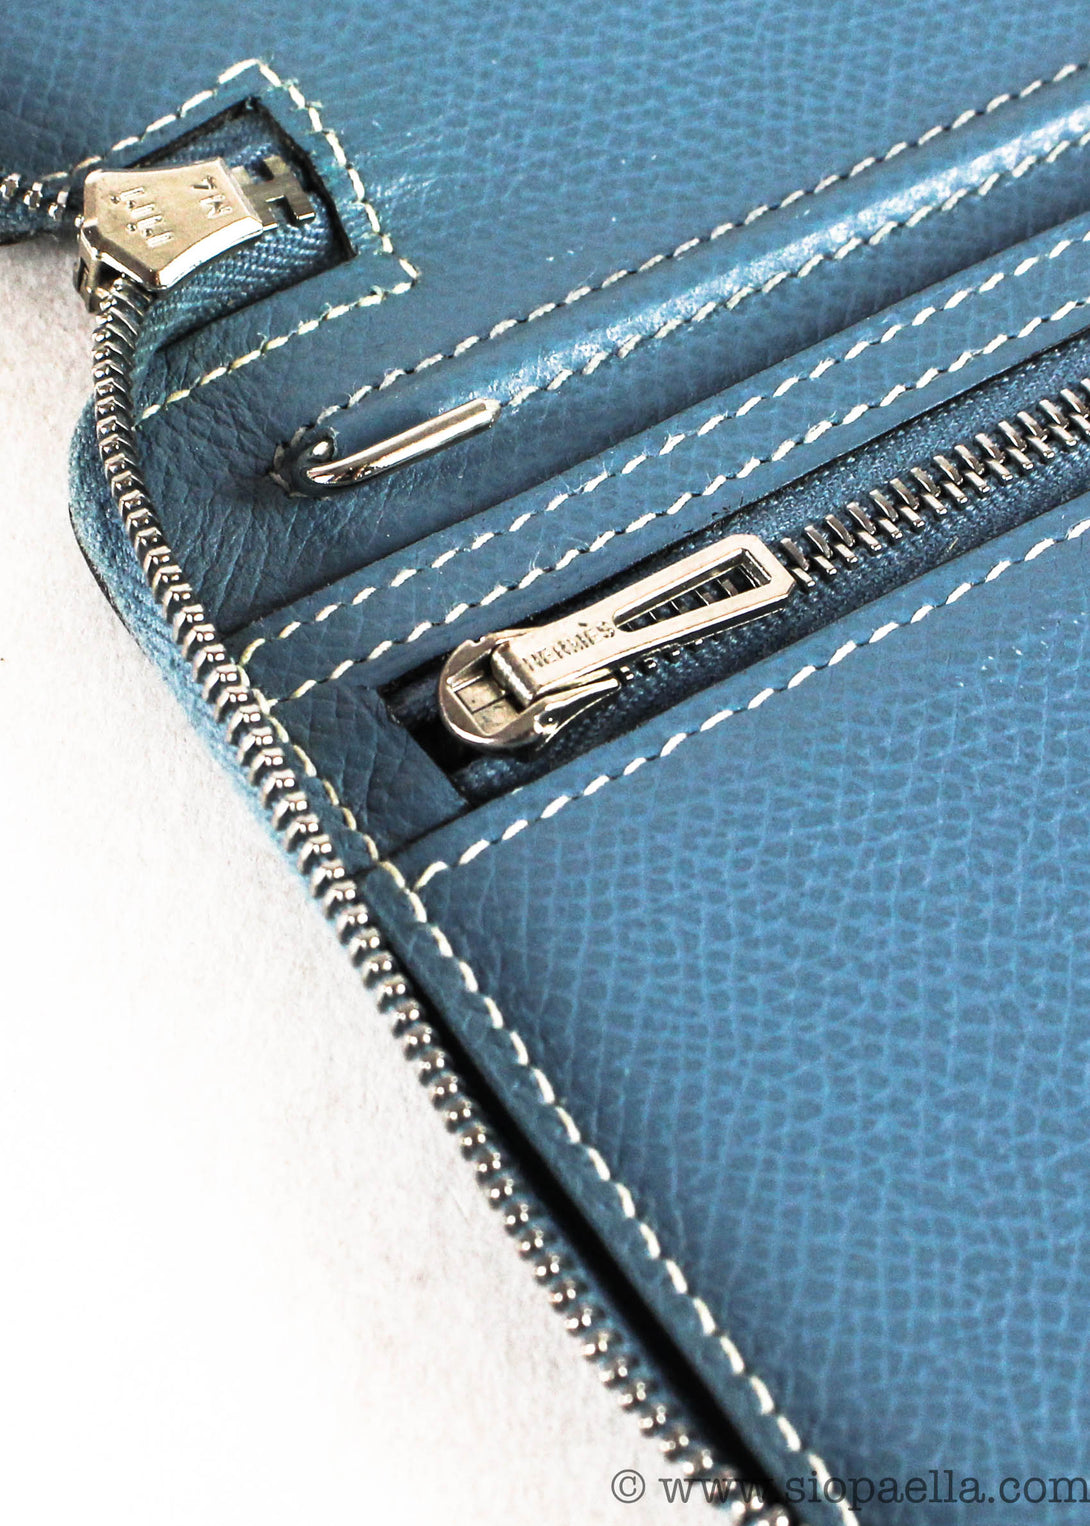 Hermes Zip Leather Adgenda Cover/Wallet - Siopaella Designer Exchange